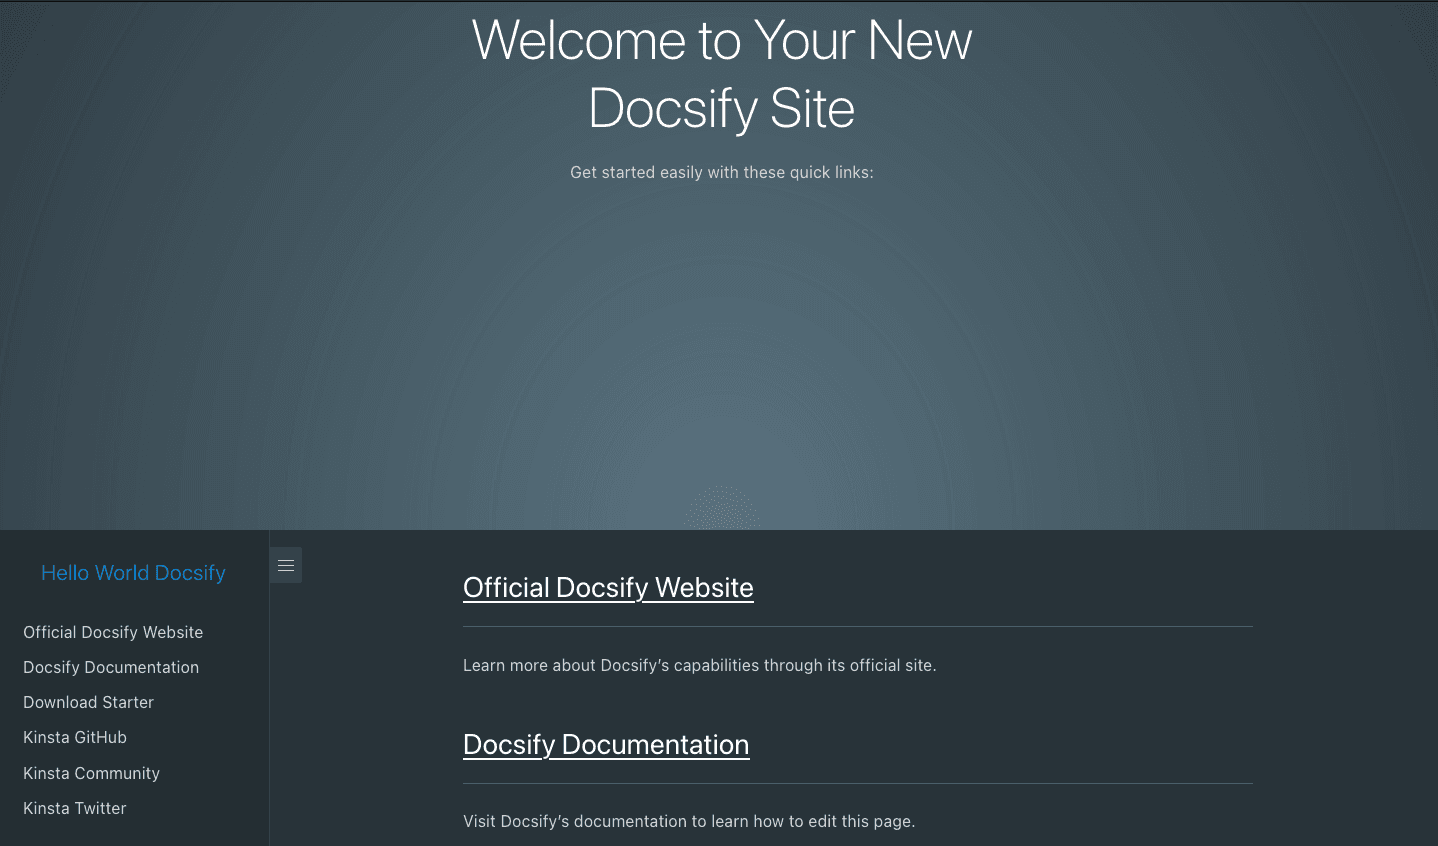 Pagina di benvenuto di Docsify dopo la distribuzione corretta di Docsify.